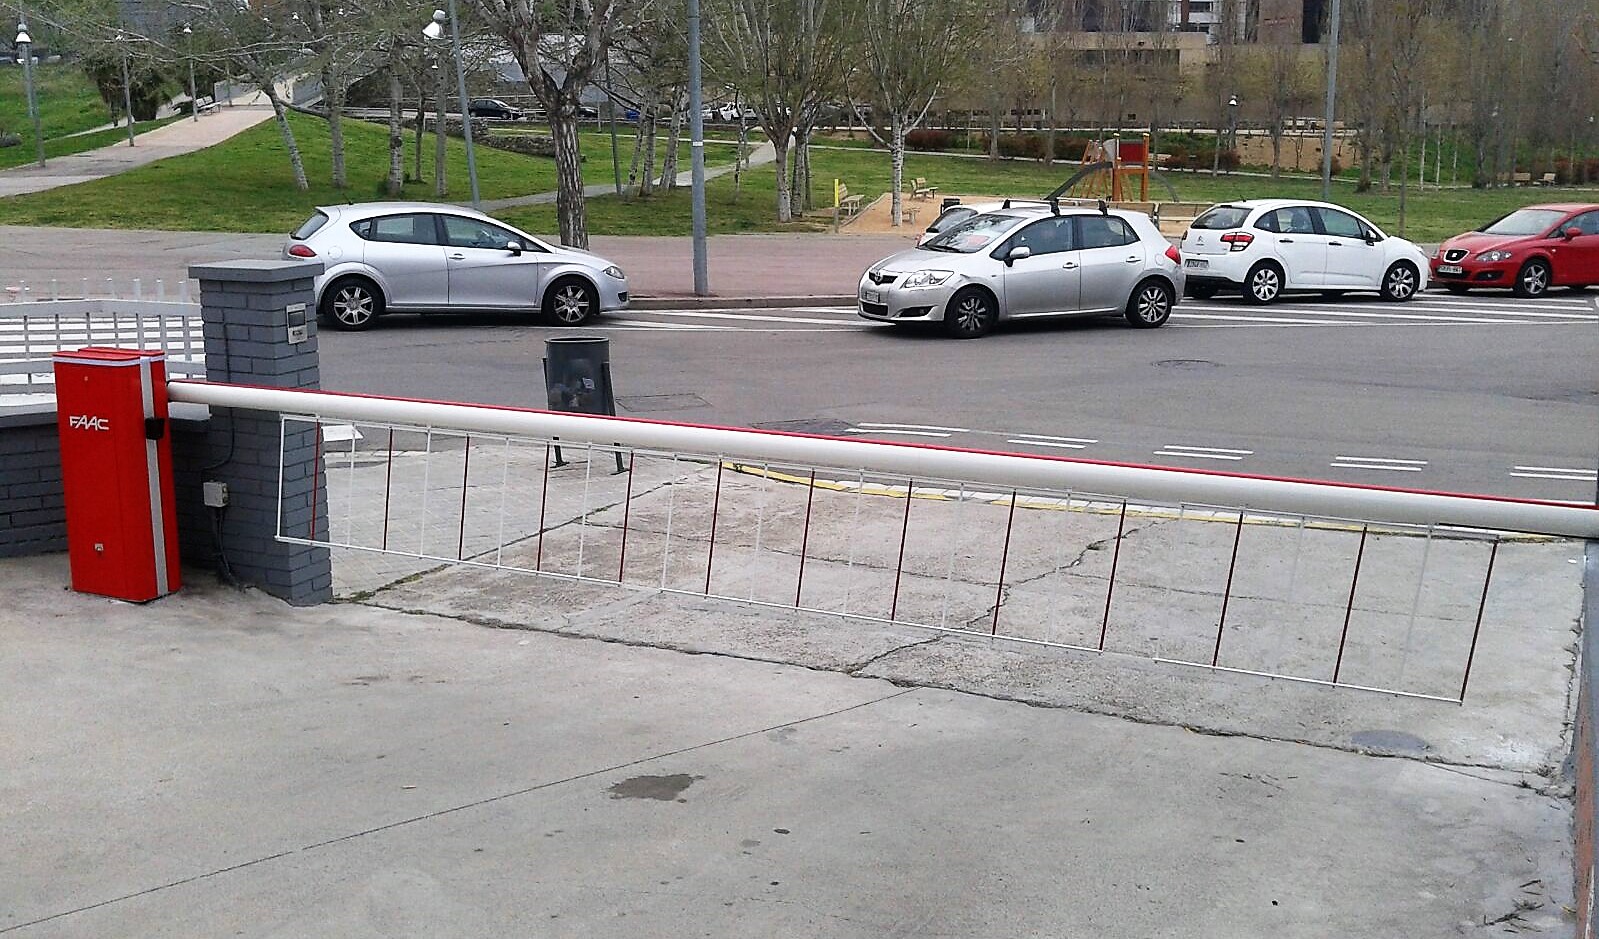 Barreras automáticas parking para control de accesos